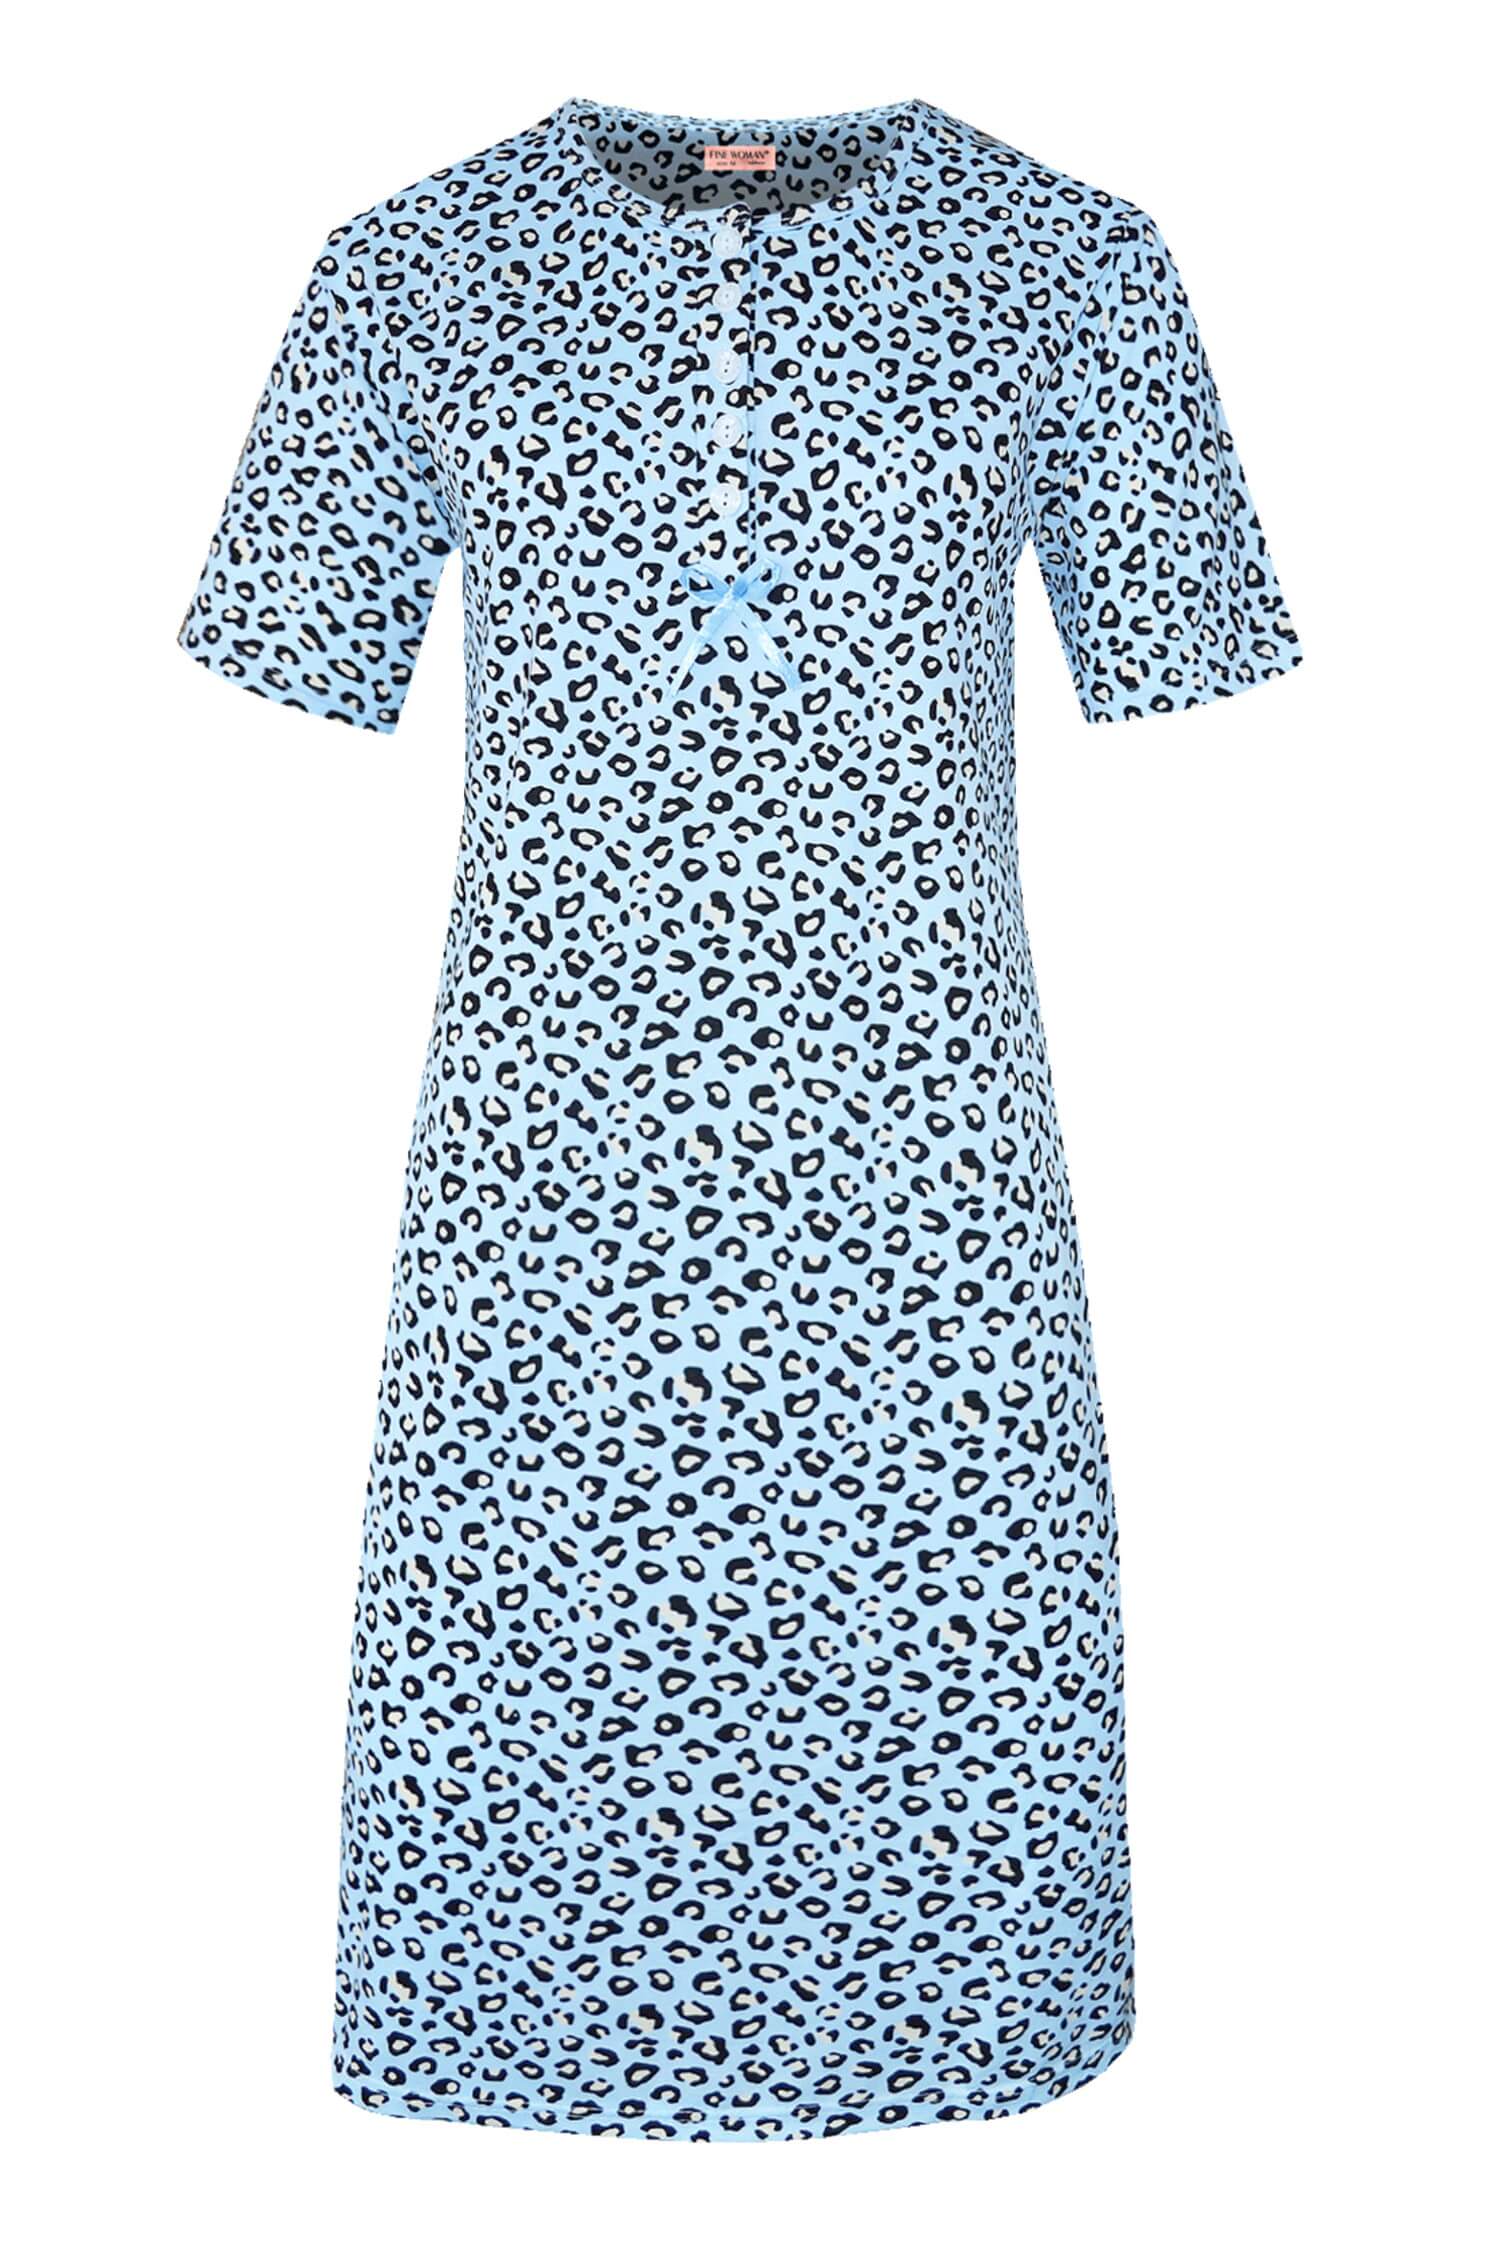 Katarina dámská noční košile leopardí vzor 6529 světle modrá L